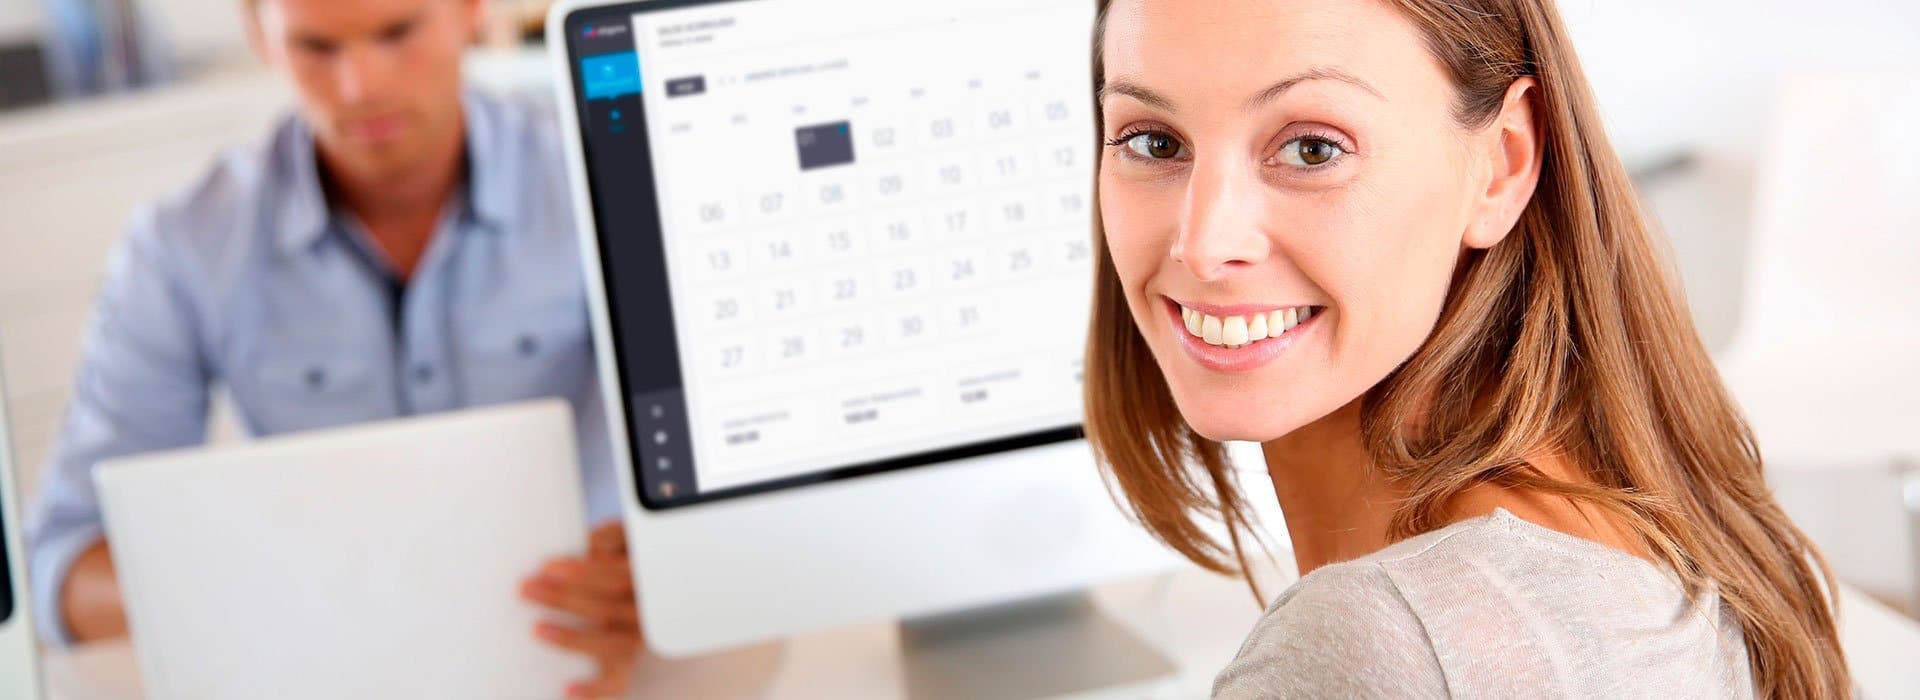 Uma mulher sorrindo com uma tela de computador ao fundo